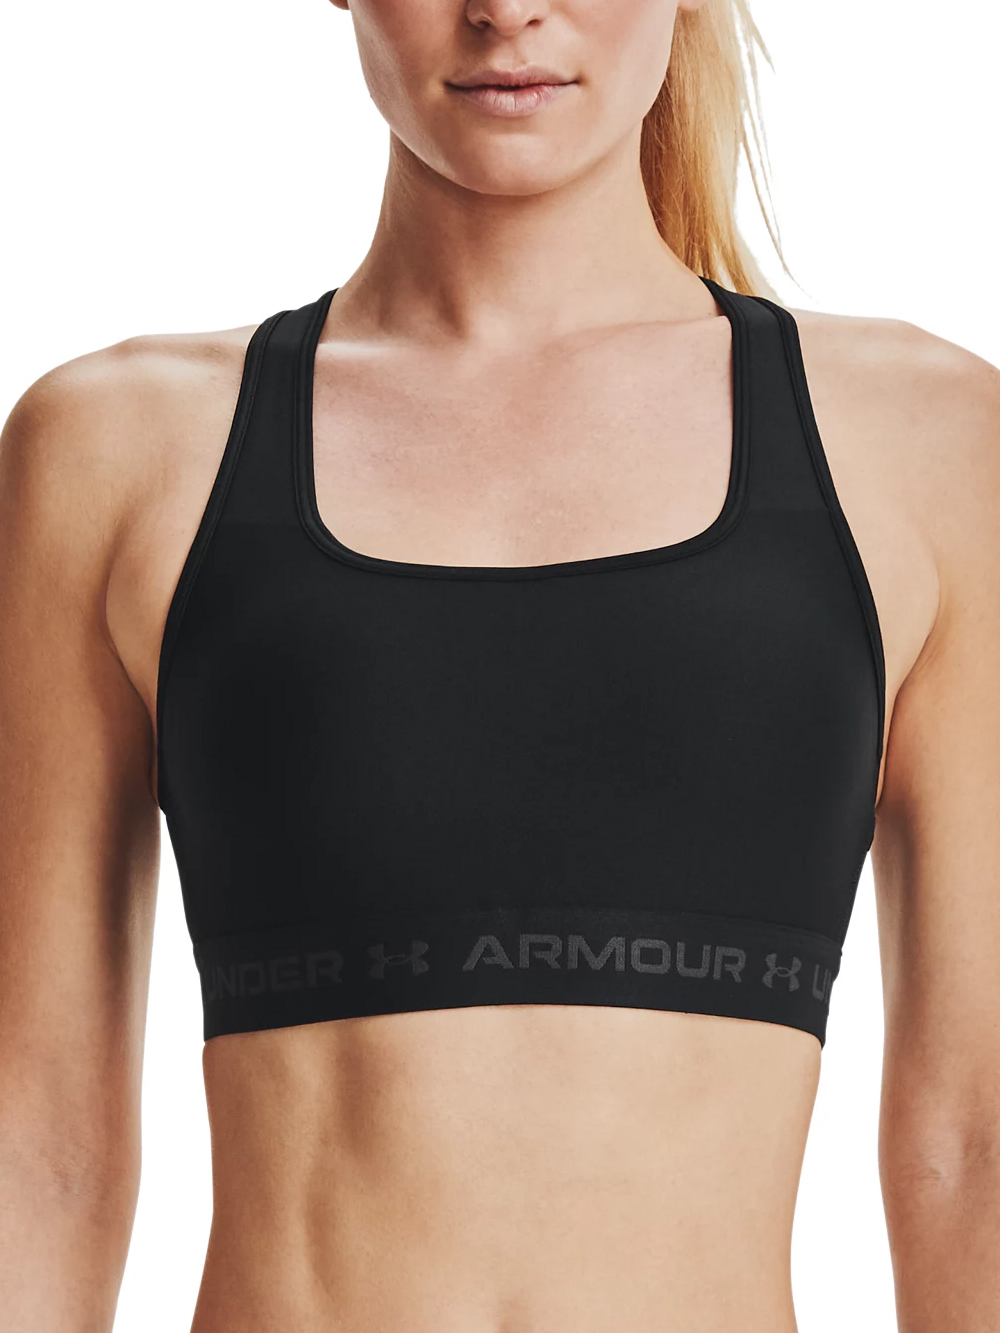 Under Armor W sports bra 1361034-866 – Your Sports Performance